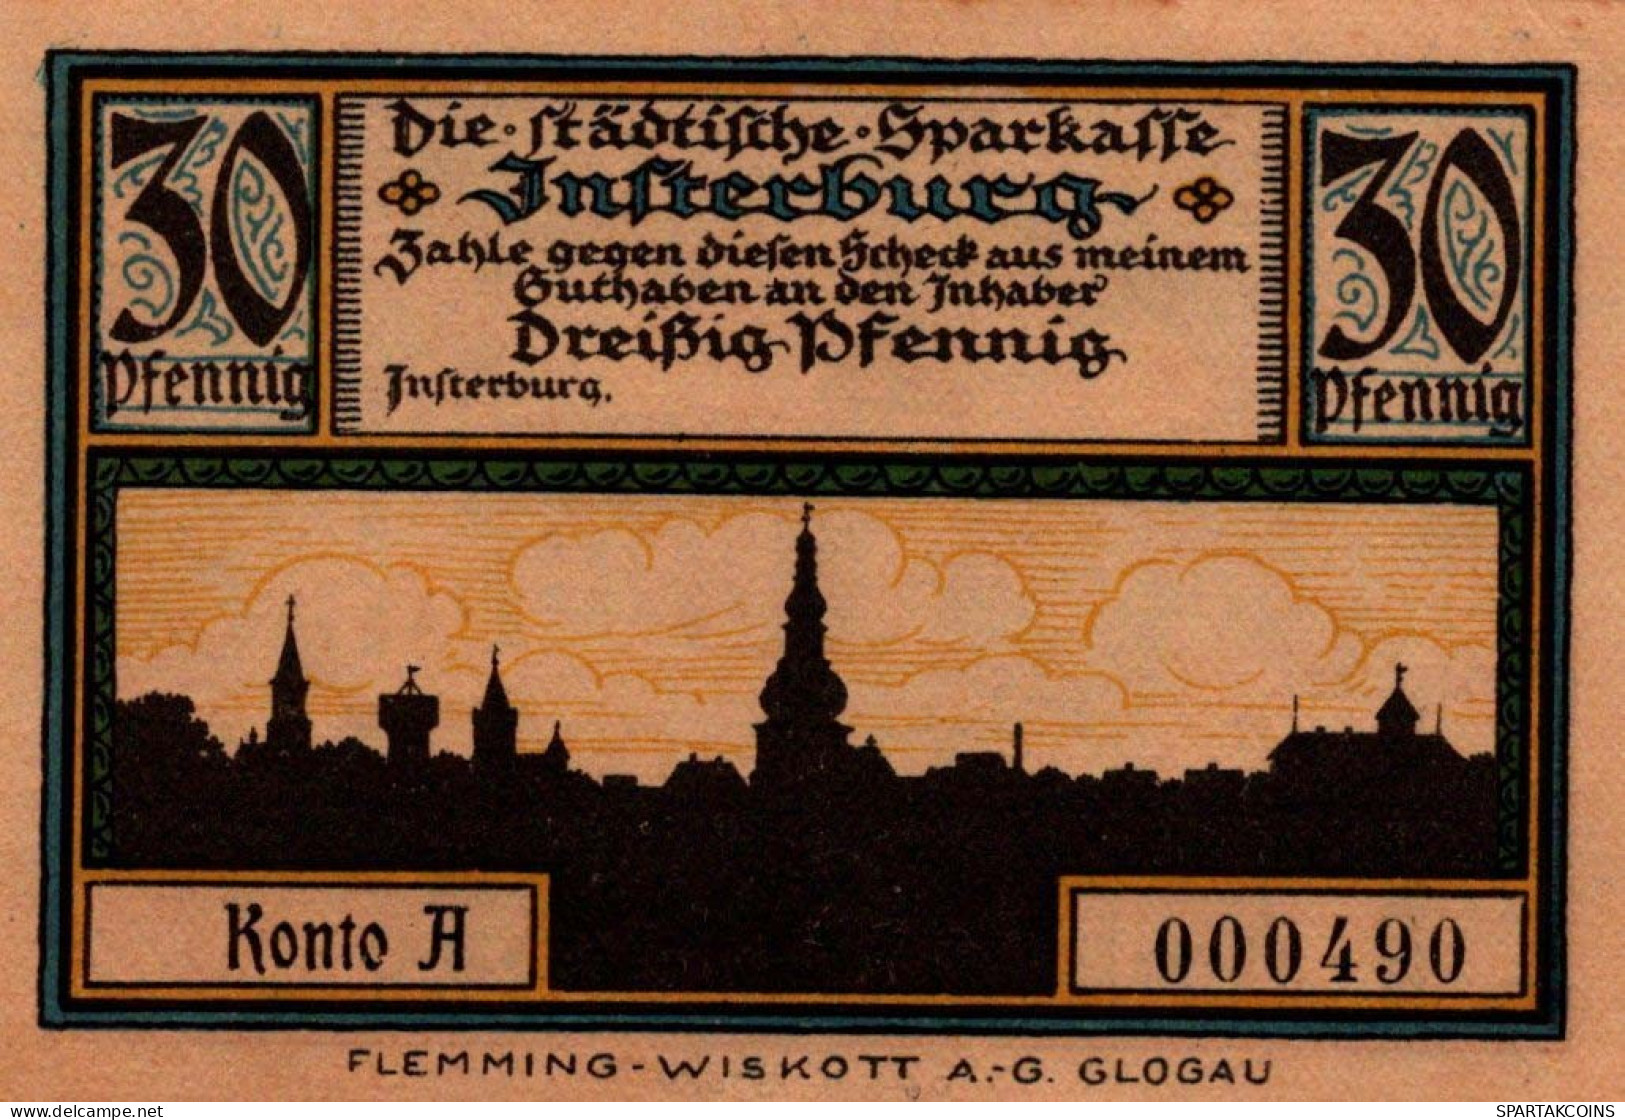 50 PFENNIG 1914-1924 Stadt INSTERBURG East PRUSSLAND UNC DEUTSCHLAND #PD105 - Lokale Ausgaben